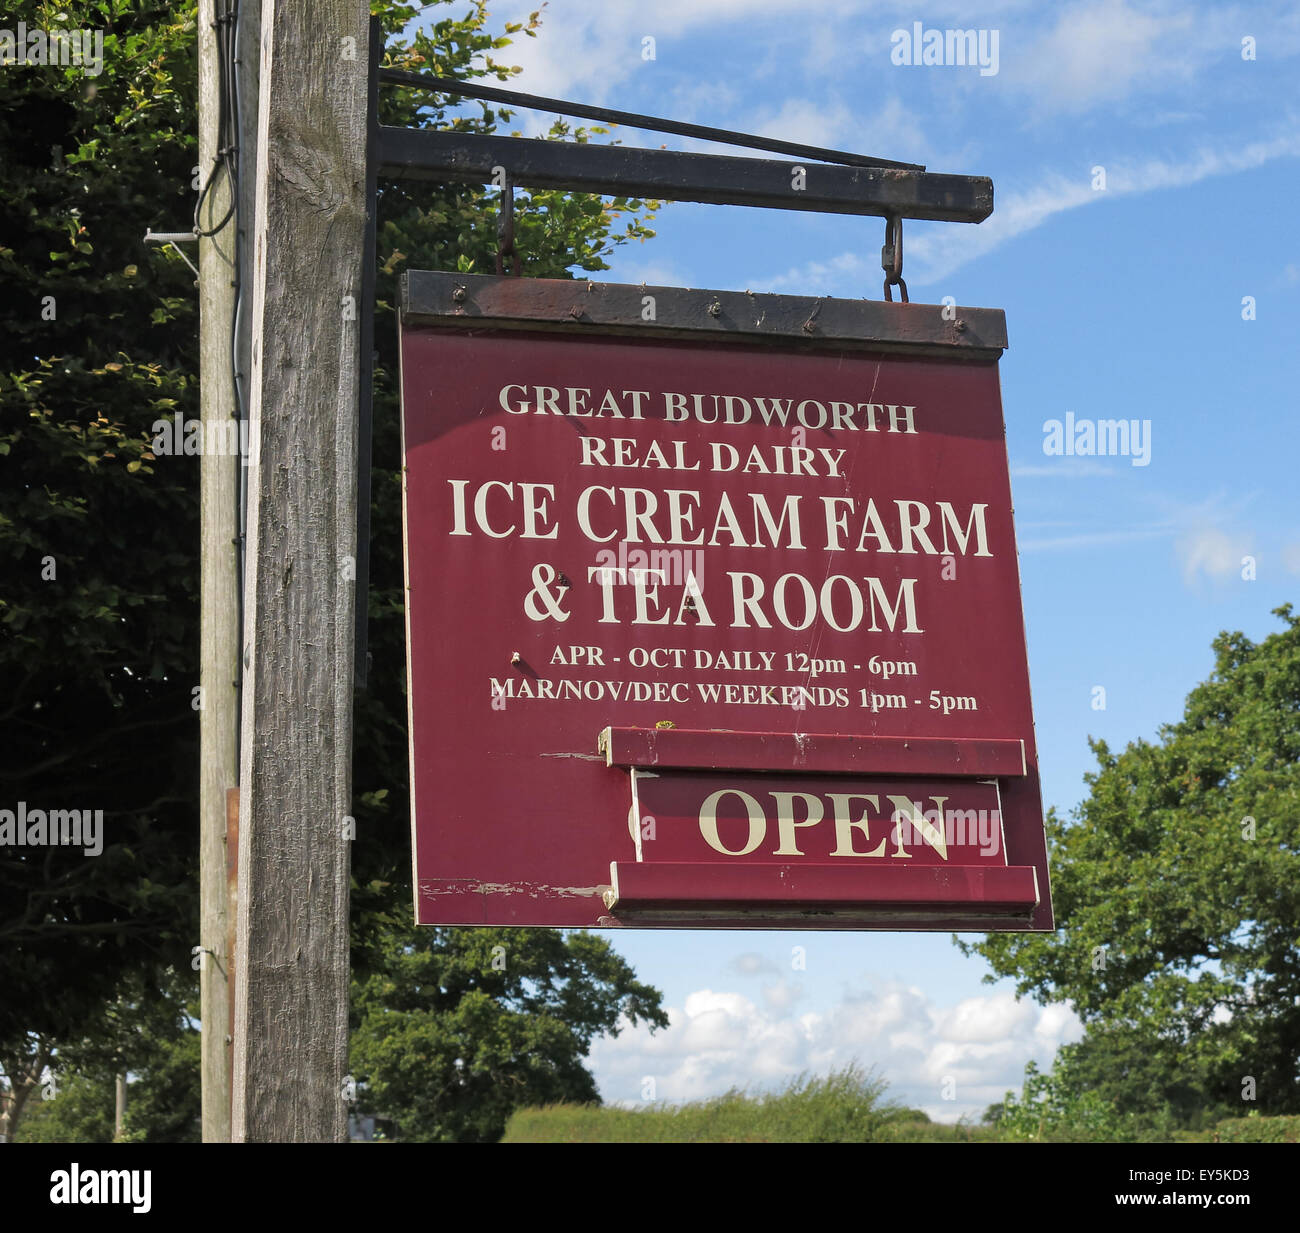 La crème glacée de Cheshire Farm et salon de thé Open Sign Banque D'Images